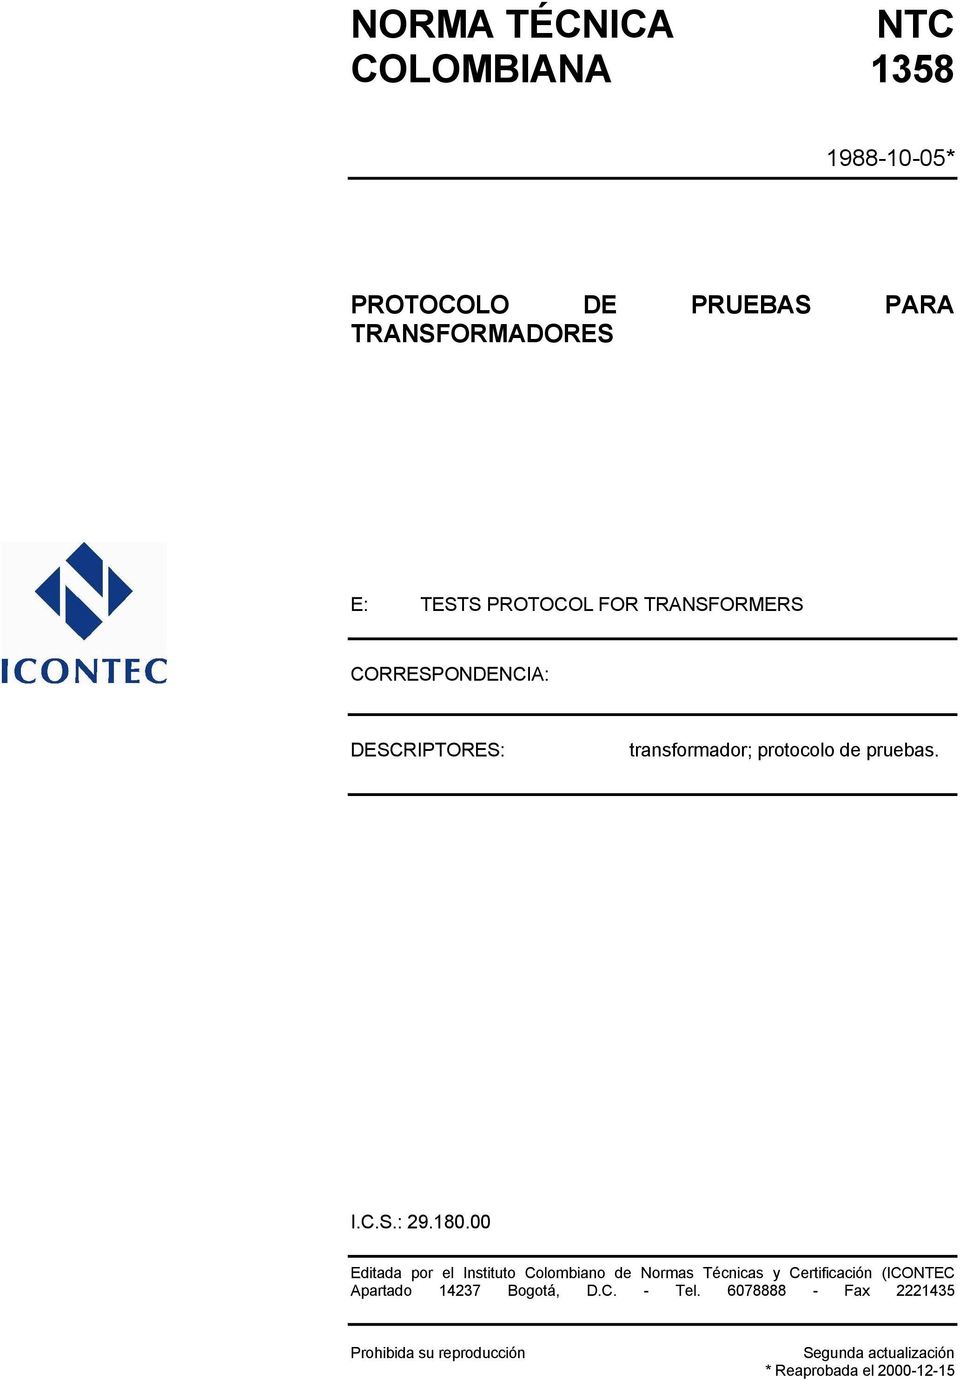 180.00 Editada por el Instituto Colombiano de Normas Técnicas y Certificación (ICONTEC Apartado 14237